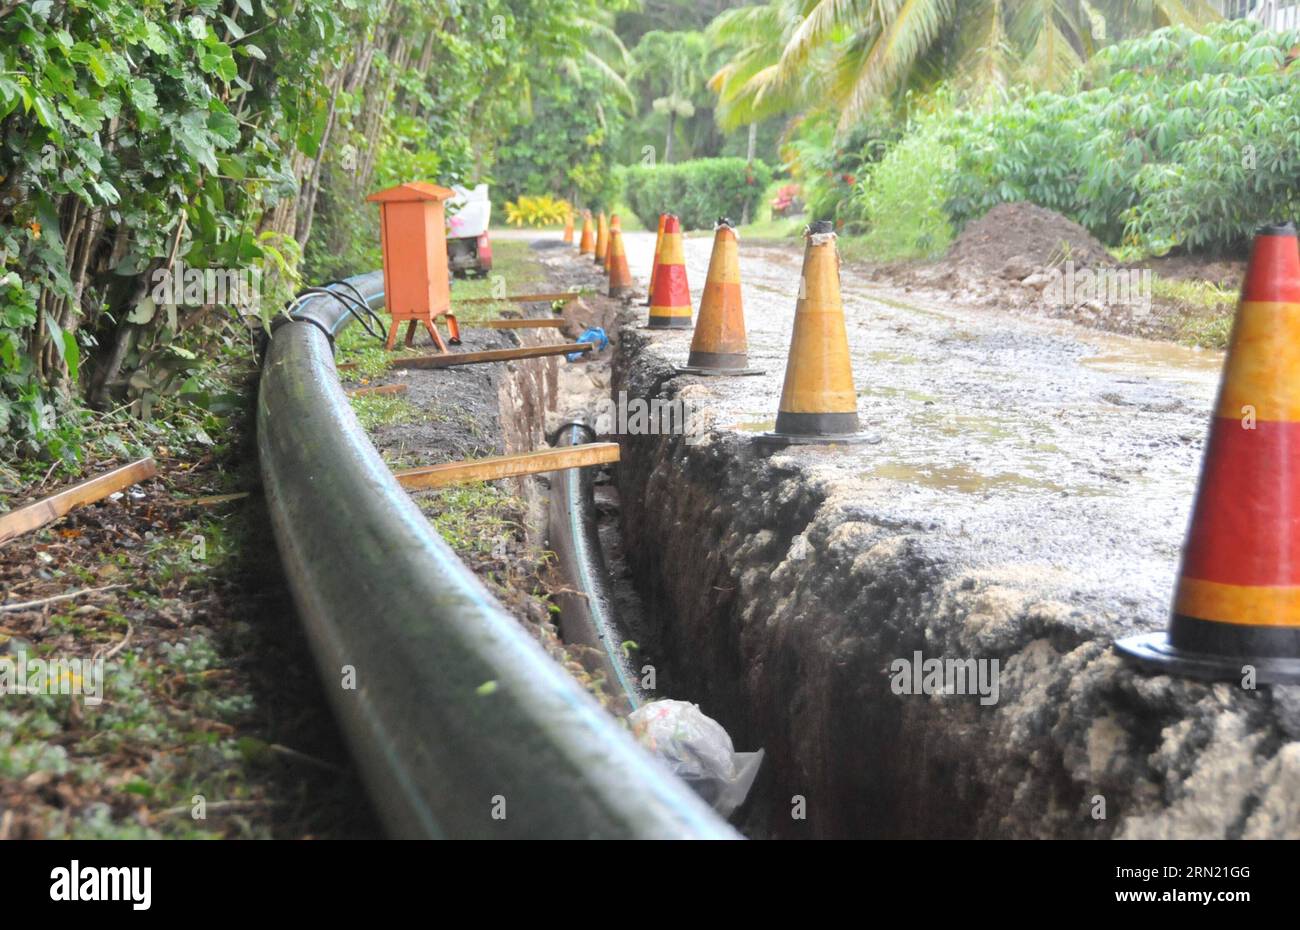 (150131) -- RAROTONGA, Cook Islands, 2015 -- Foto aufgenommen am 29. Januar 2015 zeigt die Baustelle eines chinesischen Unternehmens für das Wasserprojekt Rarotonga in Rarotonga, der Hauptinsel der Cook Islands. China, Neuseeland und die Cookinseln haben im Februar 2014 gemeinsam mit dem Bau eines Wasserinfrastrukturprojekts begonnen, um den Menschen in Rarotonga ein verbessertes Wasserleitungssystem zu liefern. ) (srb) COOK ISLANDS-RAROTONGA-WATER PROJECT-CHINESE WORKERS SuxLiang PUBLICATIONxNOTxINxCHN Rarotonga Cook Islands 2015 Foto aufgenommen AM Januar 29 2015 zeigt eine chinesische Baustelle des Unternehmens S von Rarotong Stockfoto